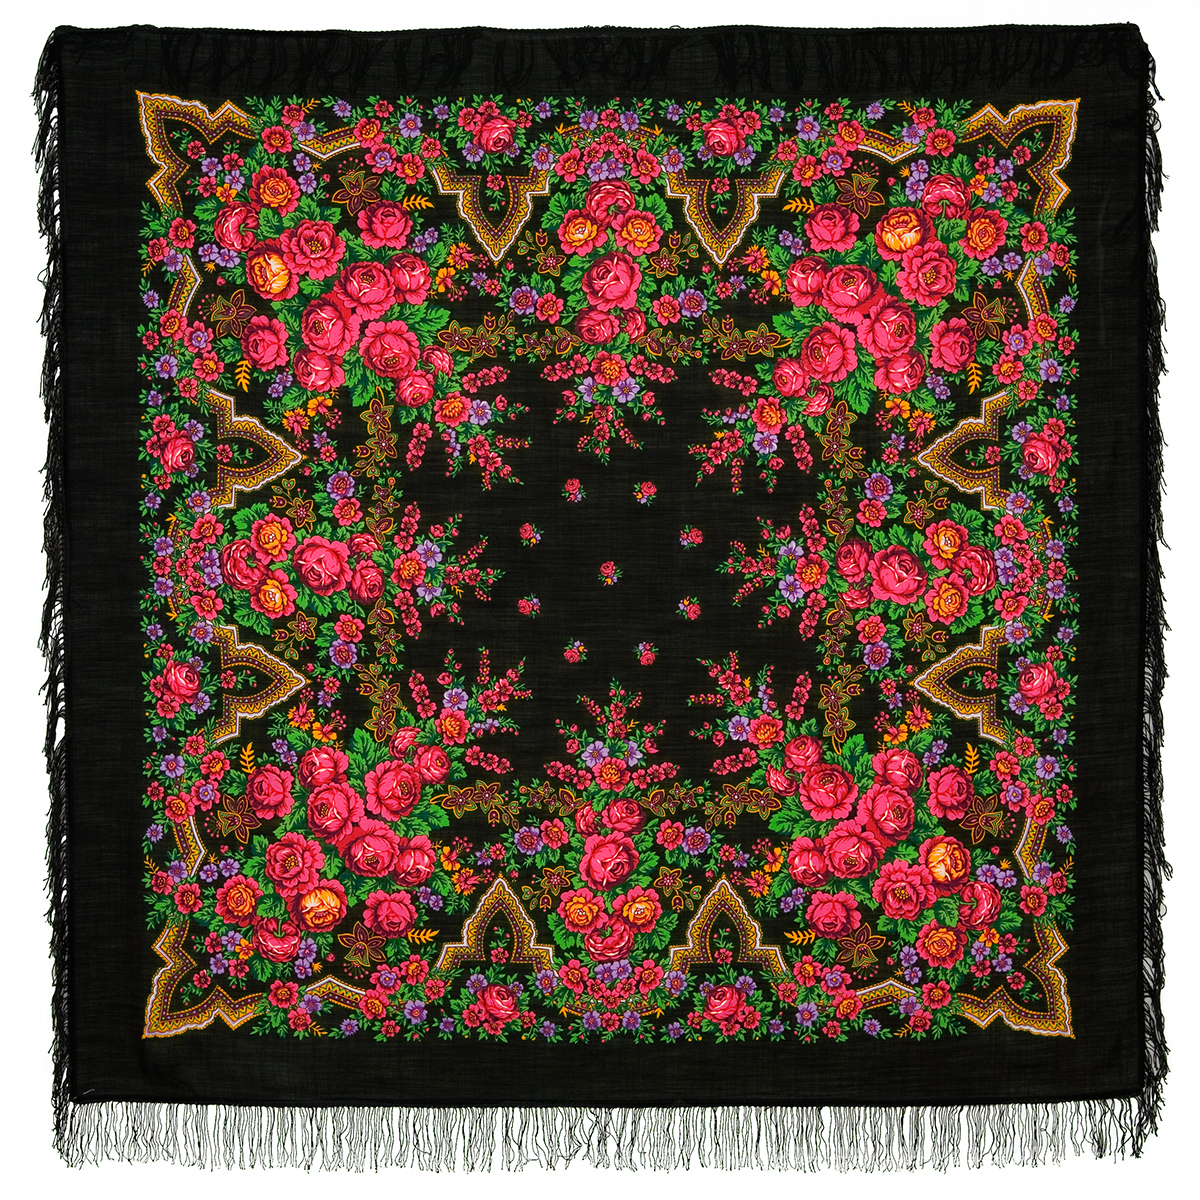 Платок женский Павловопосадский платок 325 черный/красный/зеленый, 146х146 см